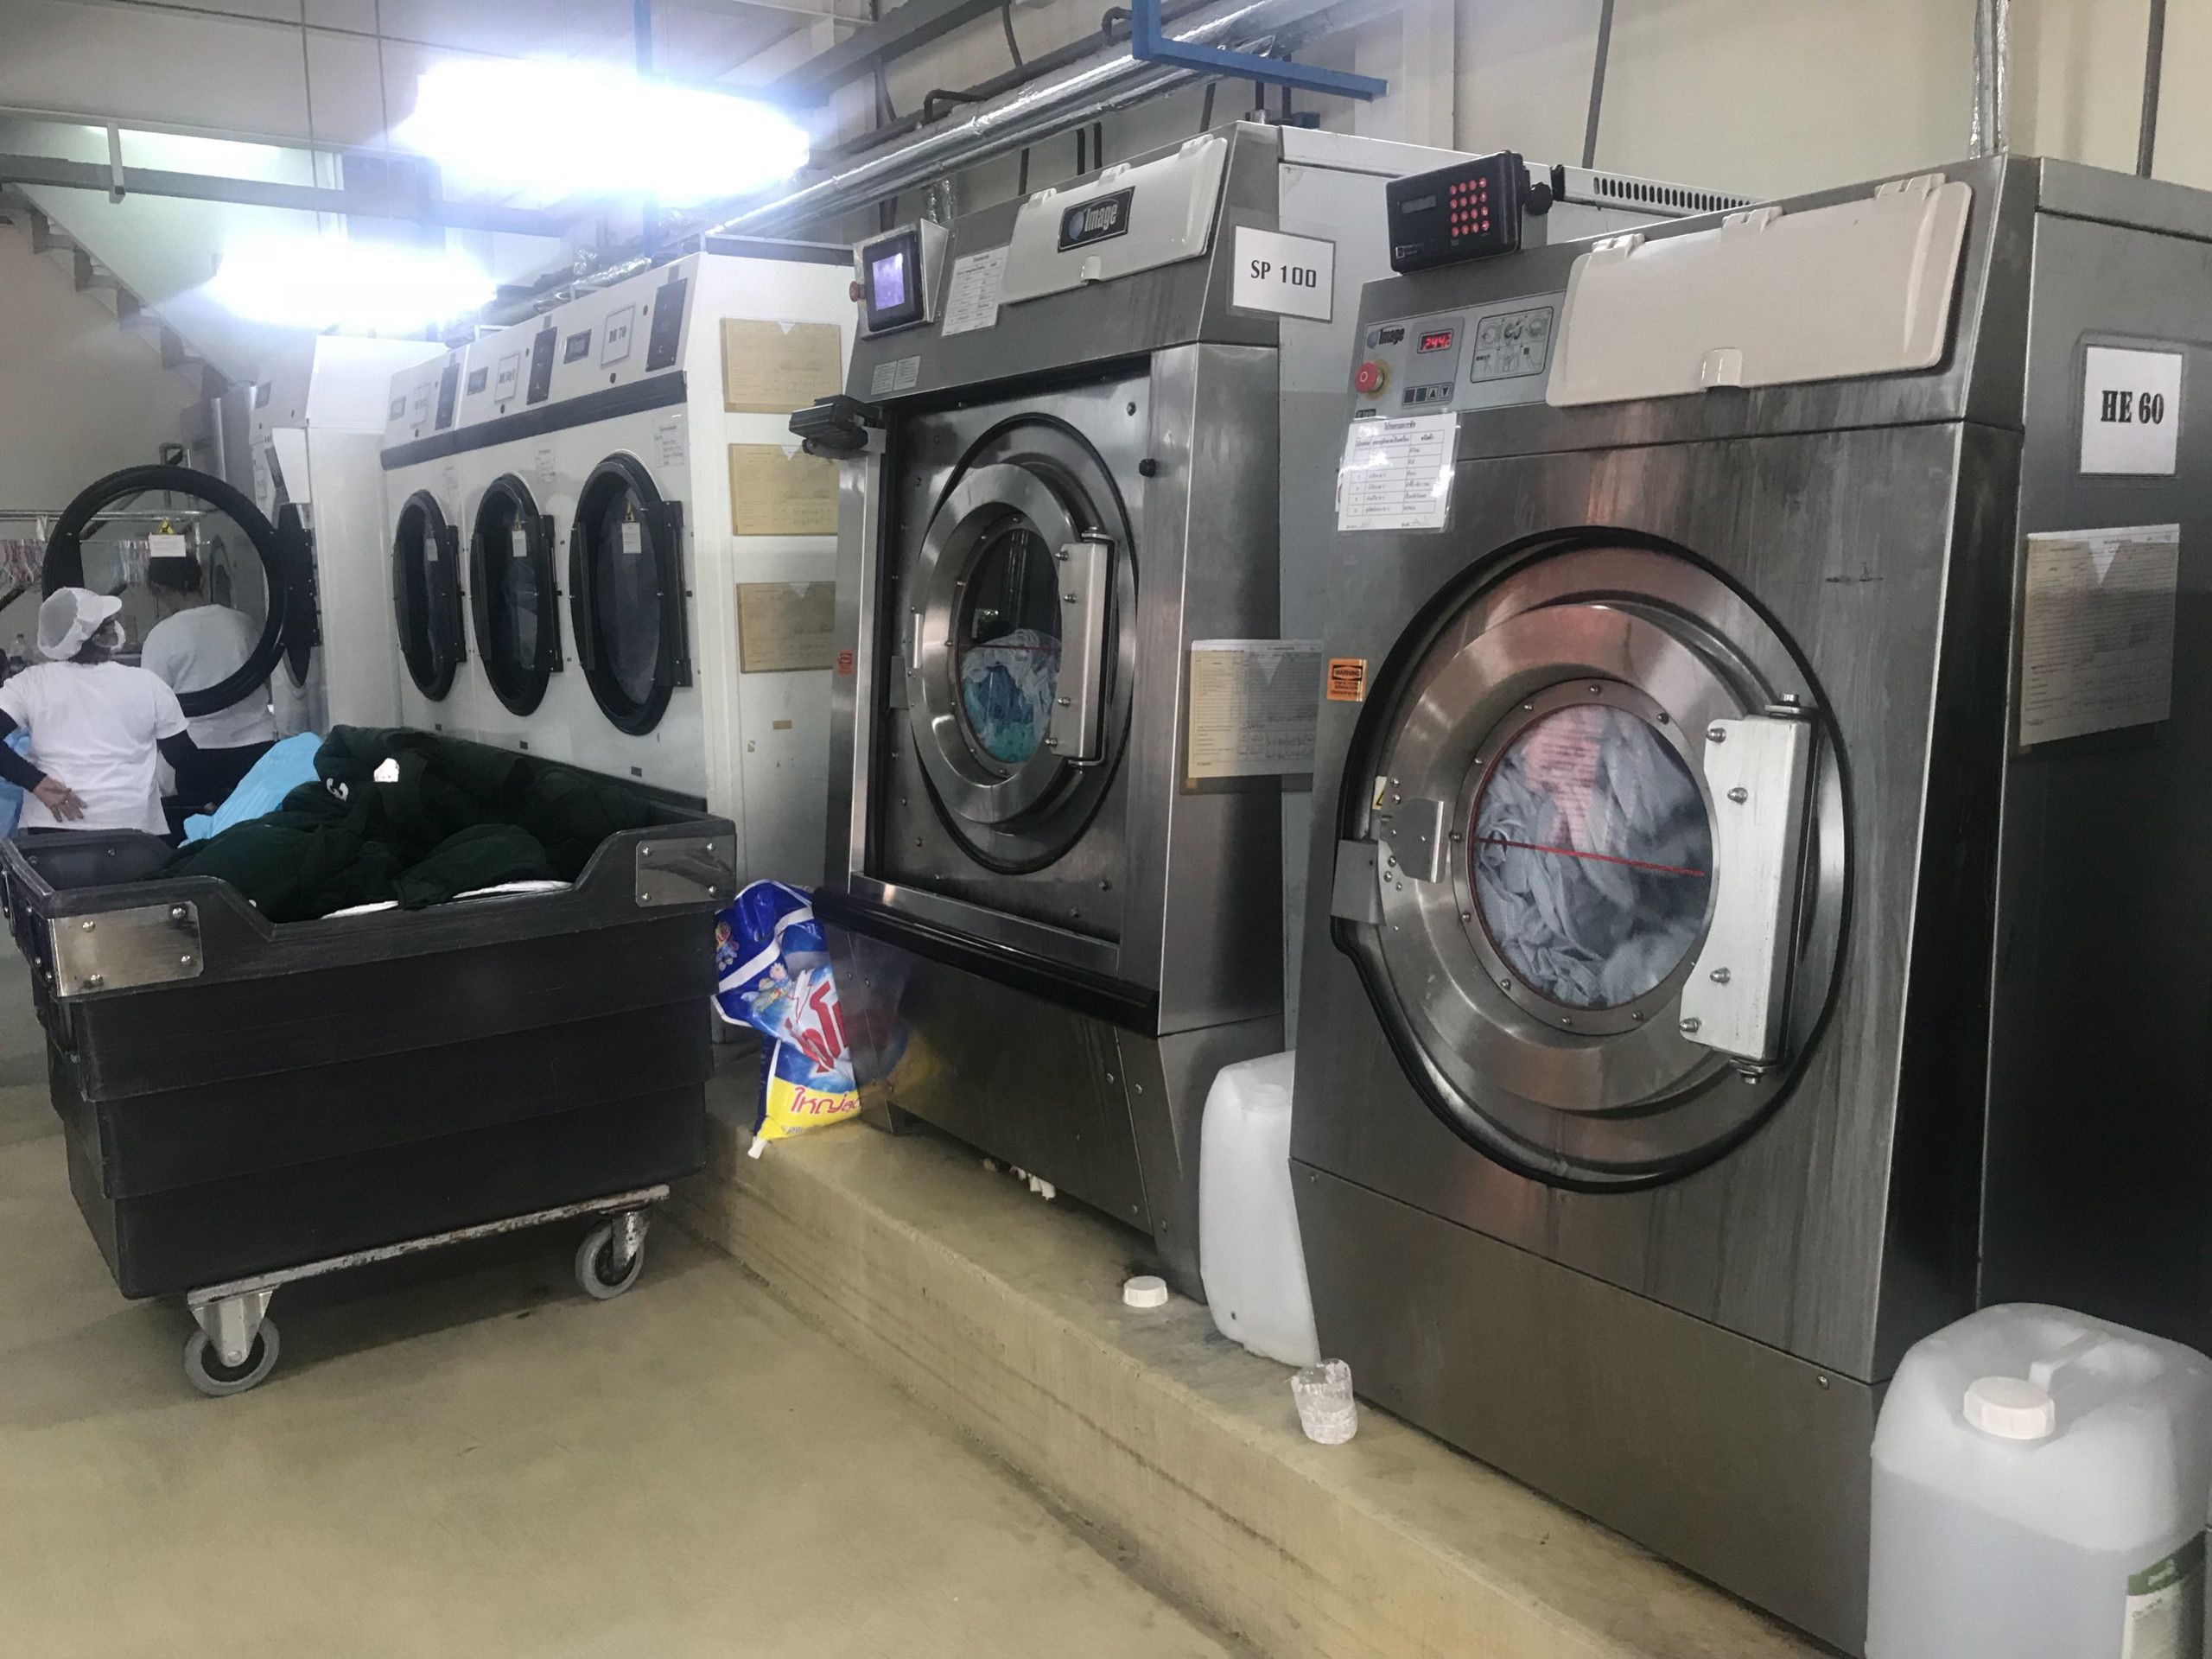 Điện Lạnh Sapa nhận sửa chữa máy giặt công nghiệp tại nhà quận 10 chuyên nghiệp, nhanh chóng với mức giá ưu đãi nhất TP. HCM